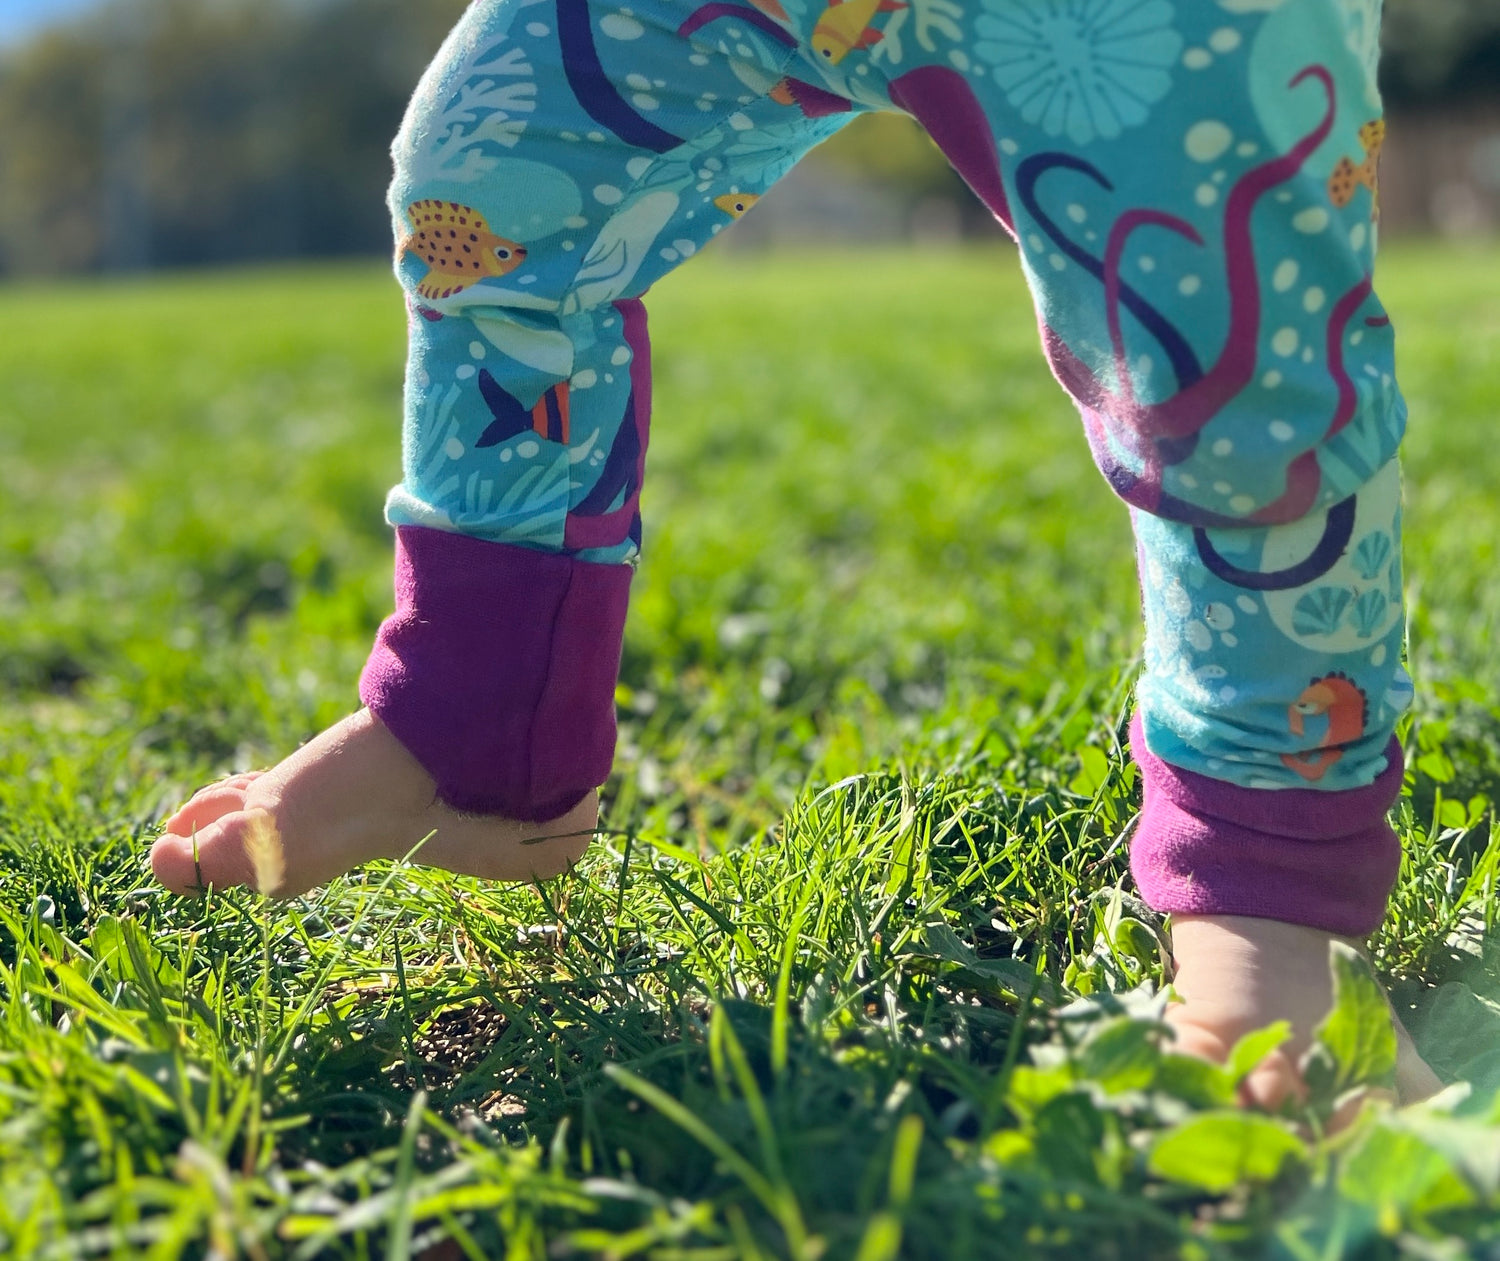 Les premiers pas d'un enfant sont souvent le fruits de nombreuses chutes, d'où l'importance de les habiller confortablement...